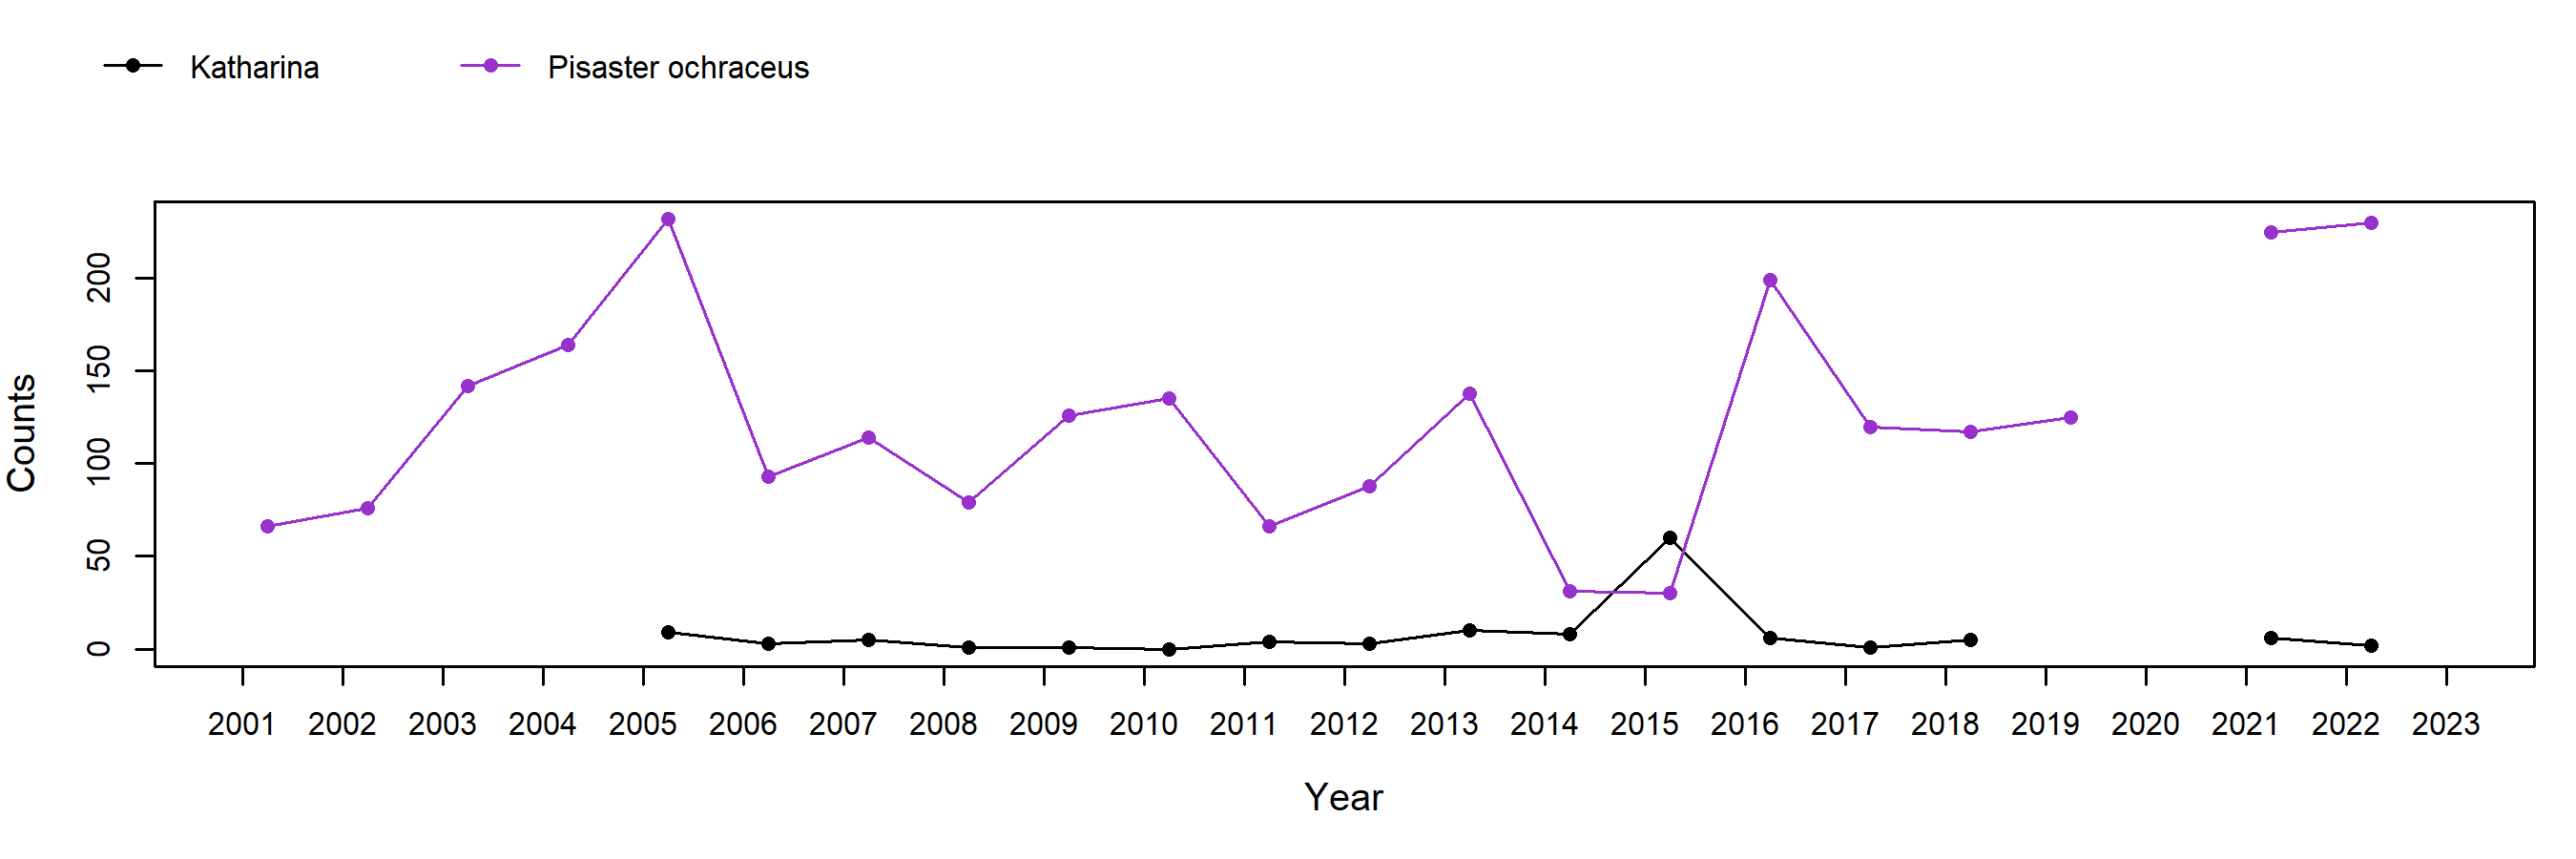 Ecola Pisaster trend plot